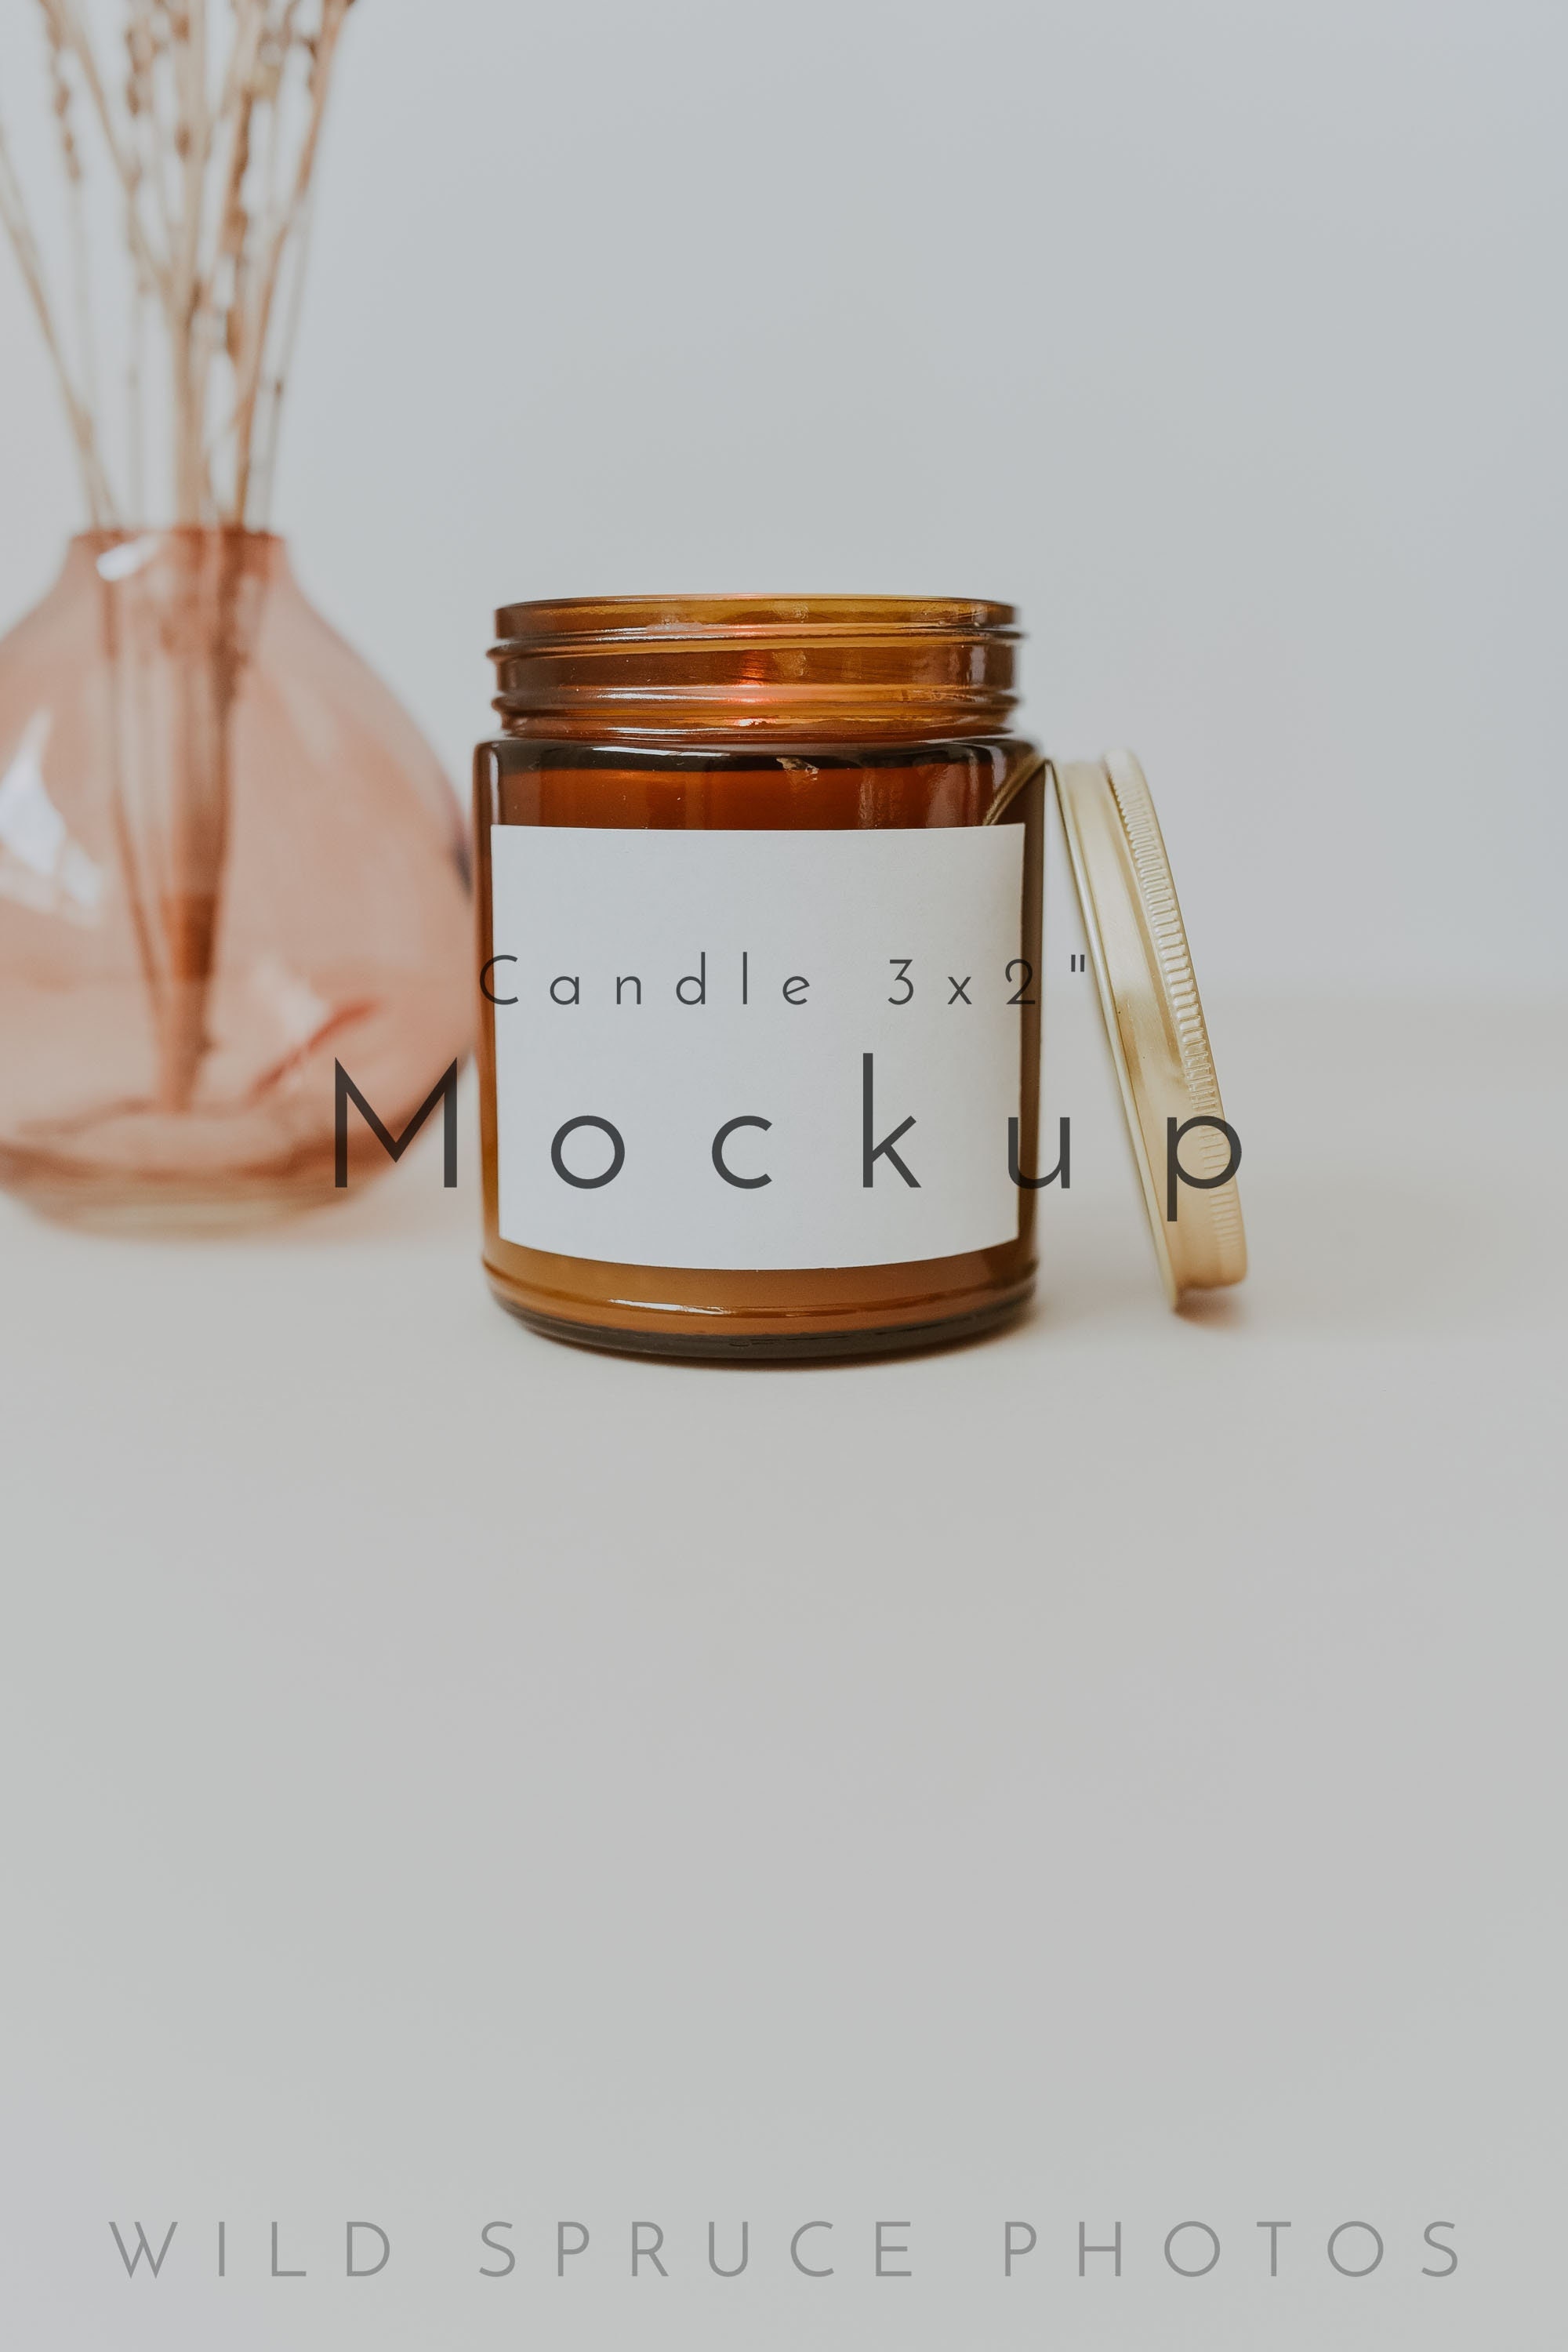 Candle Jar Mockup Sampler for Canva